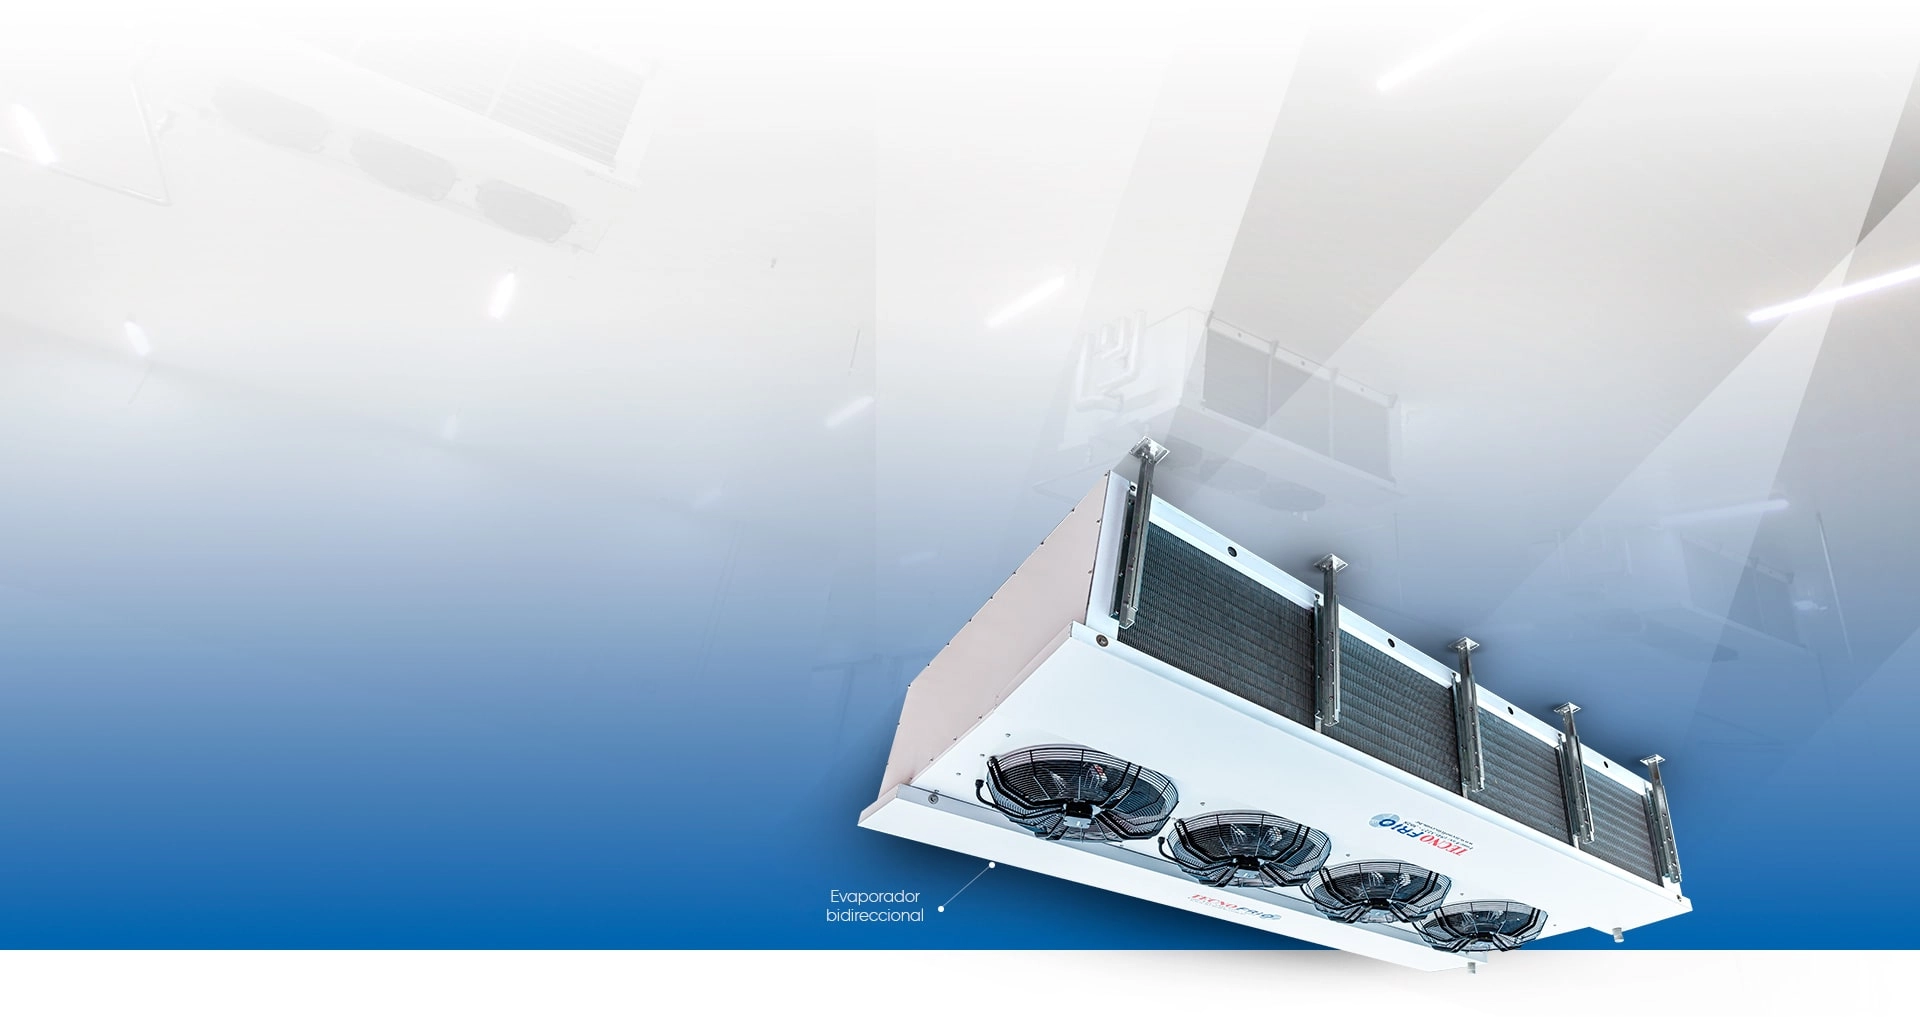 Banner contendo a imagem do evaporador bidirecional da Tecnofrio, e ao fundo imagem do evaporador instalado em ambiente interno de empresa.